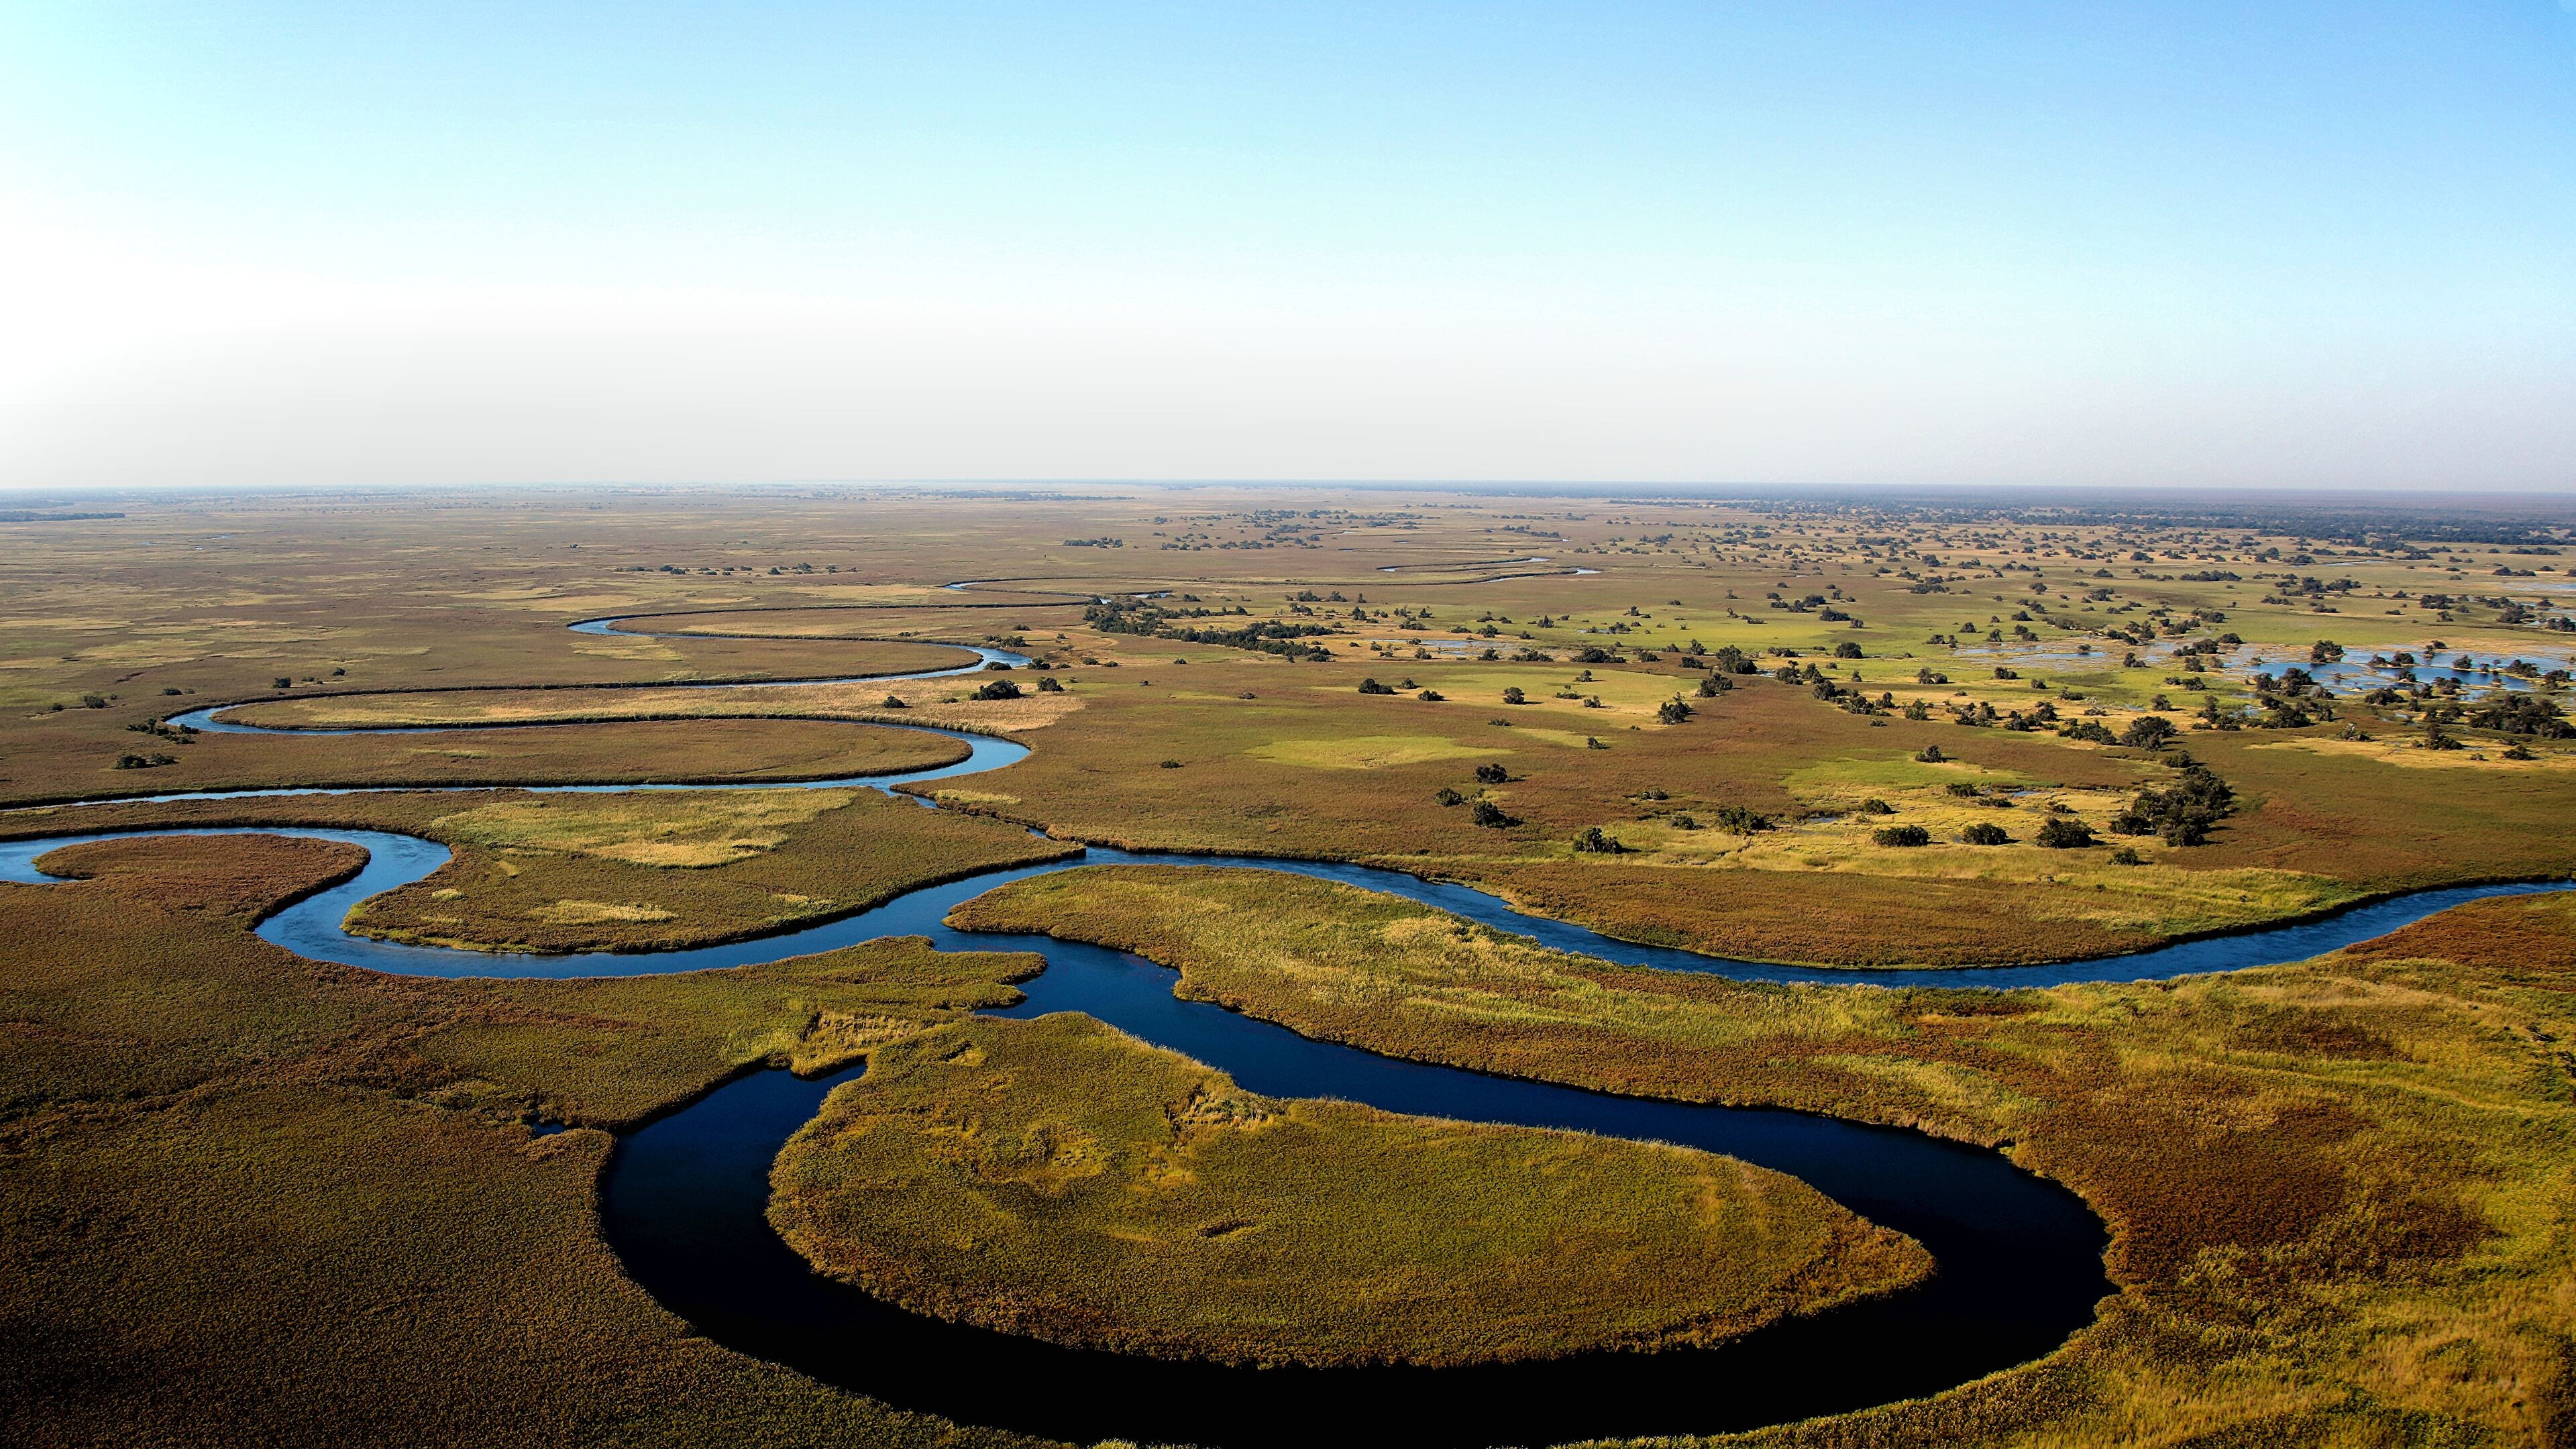 HD wallpaper, 3840X2160 4K Desktop, Desktop 4K Okavango Delta Wallpaper Image, African Landscapes, Stunning Backgrounds, Botswana Wallpapers